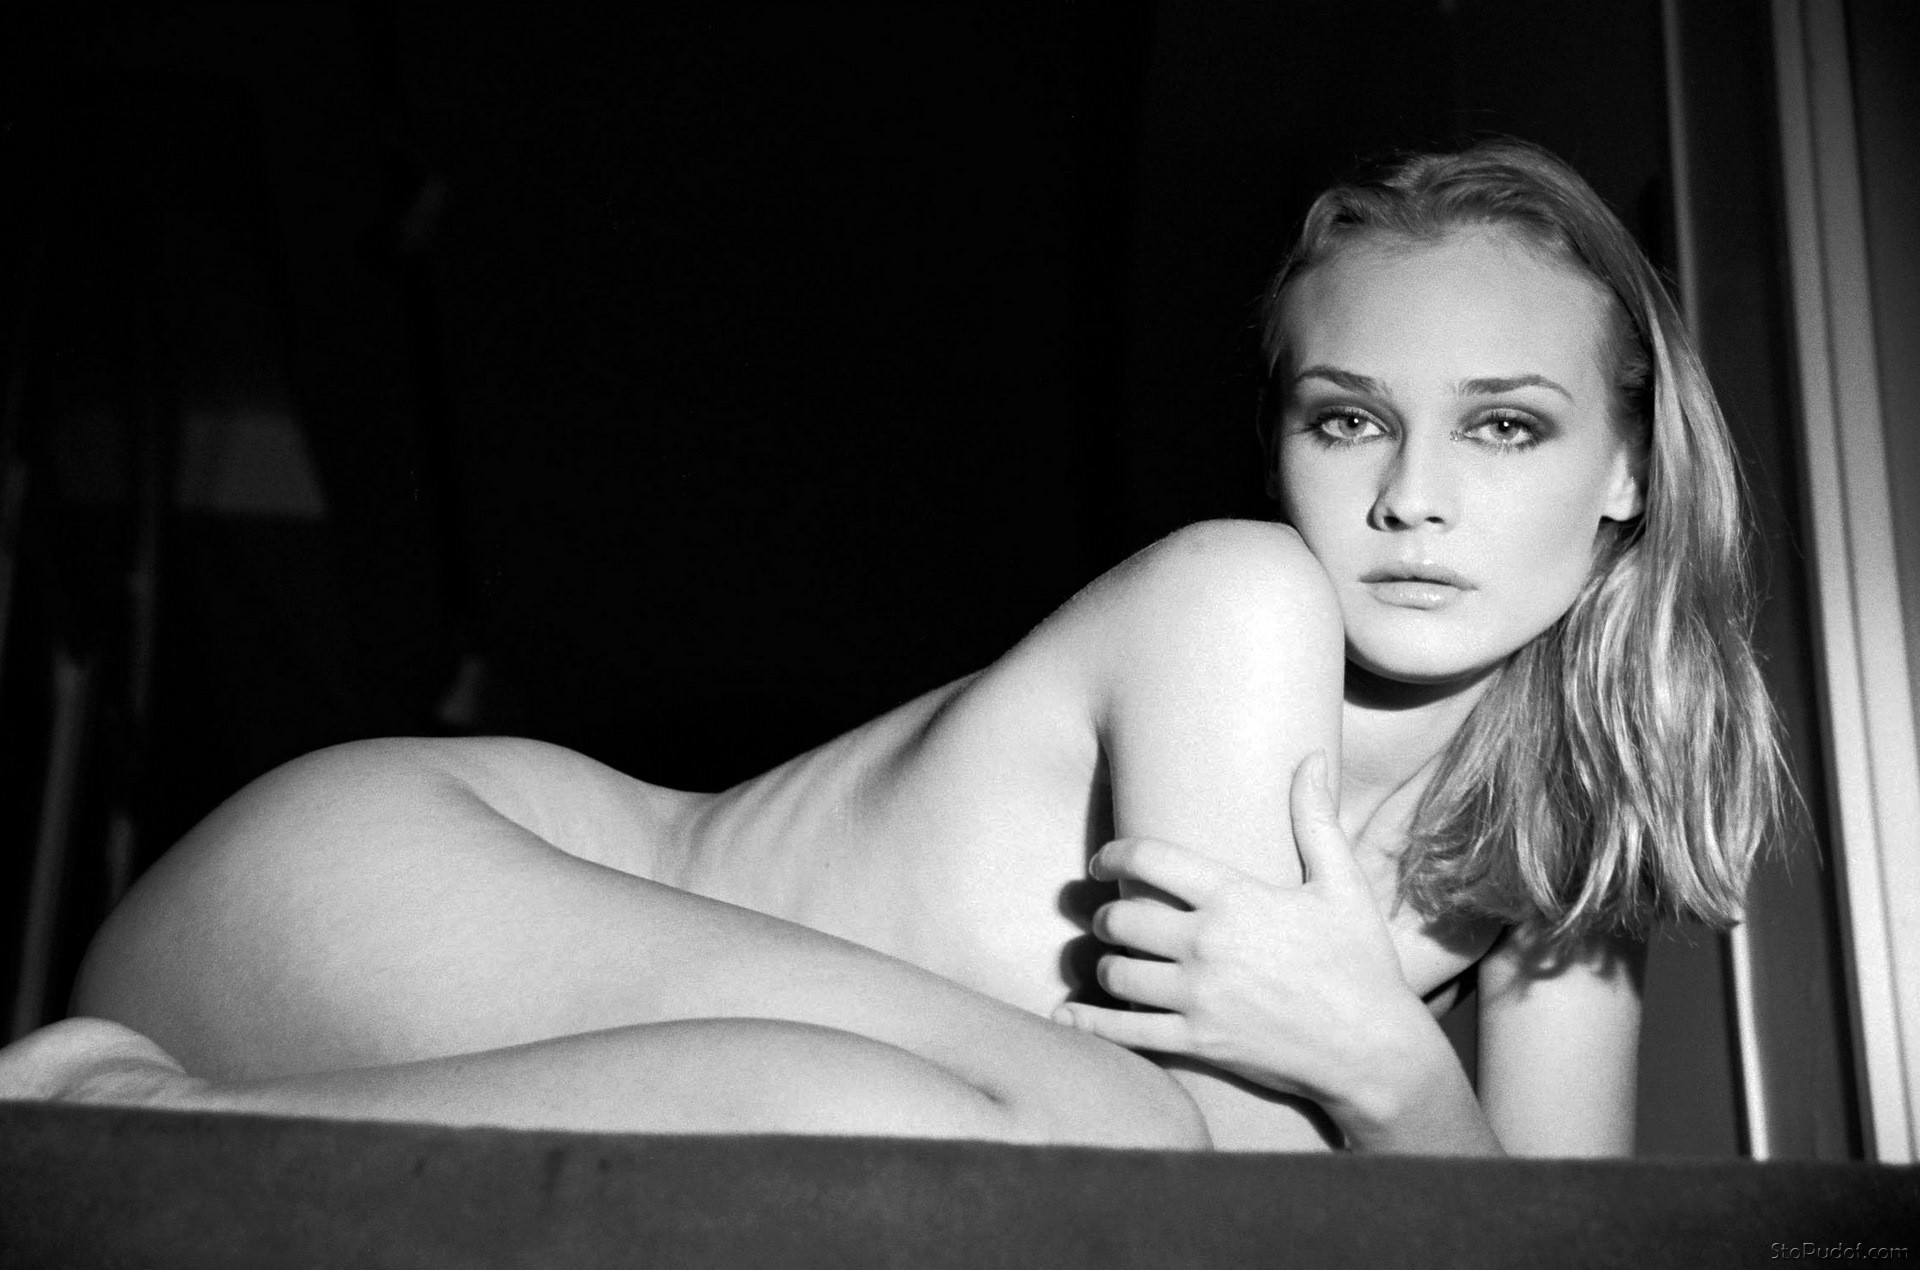 naked photos of Diane Kruger naked - UkPhotoSafari